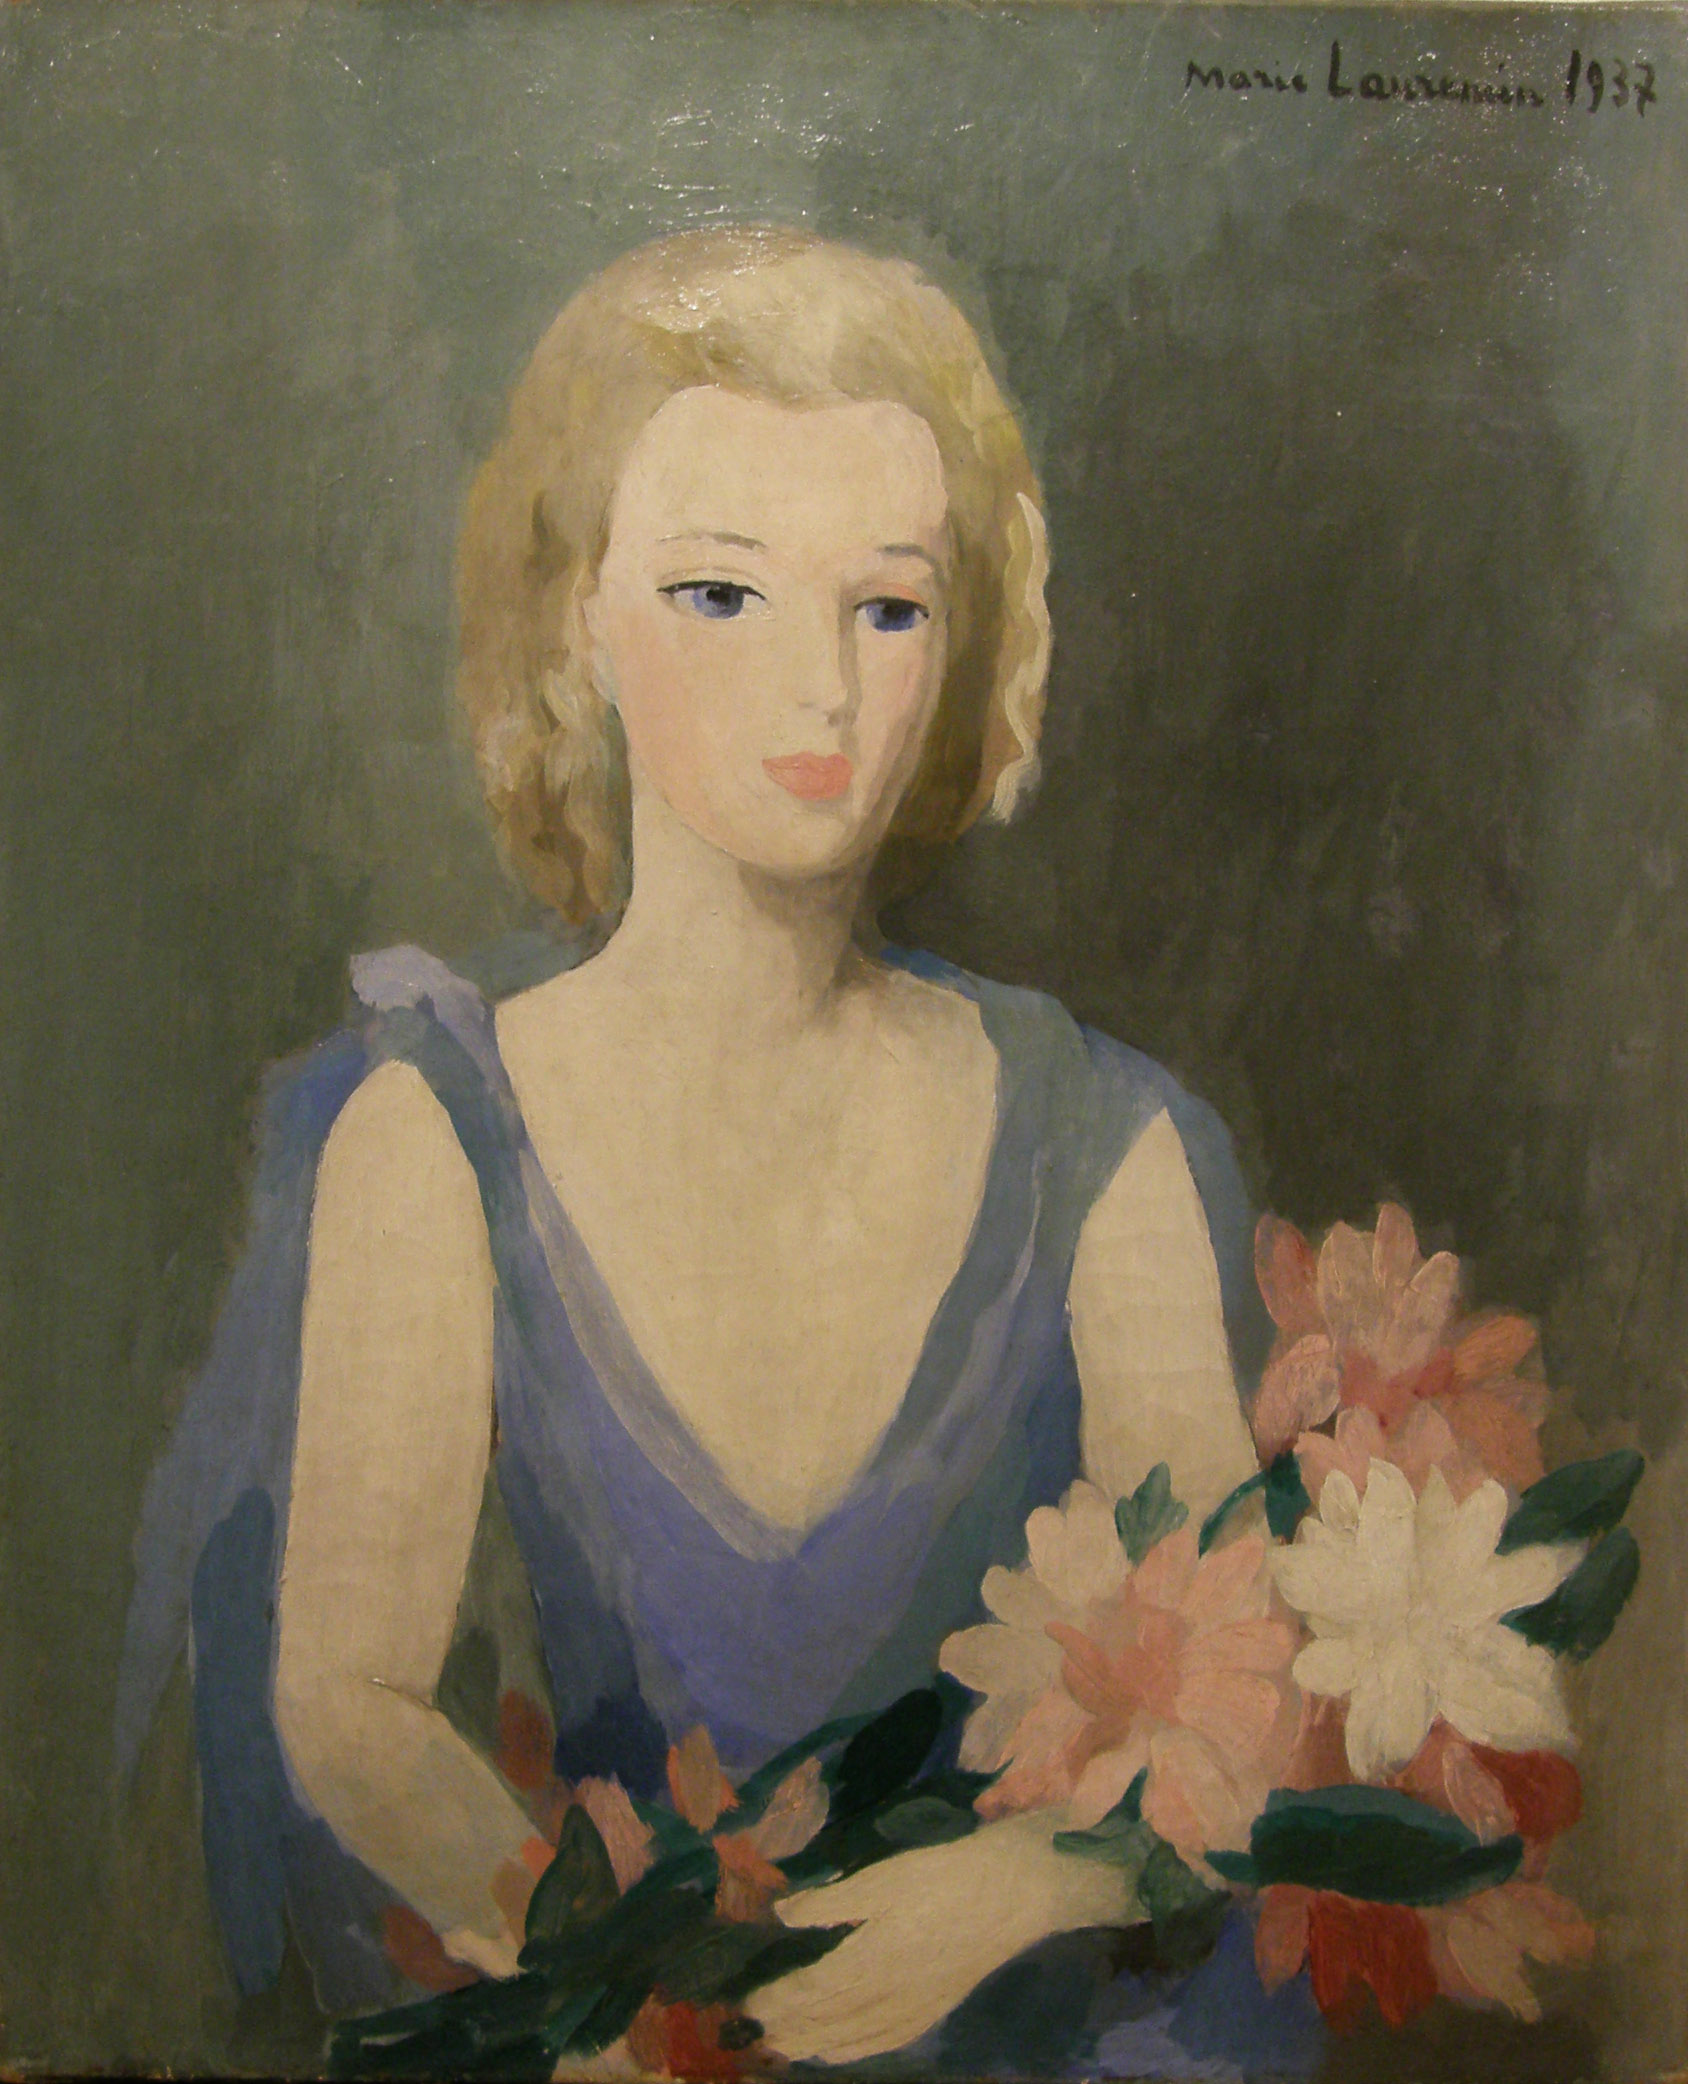 ローランサン「花束を抱える婦人」 マリー・ローランサン